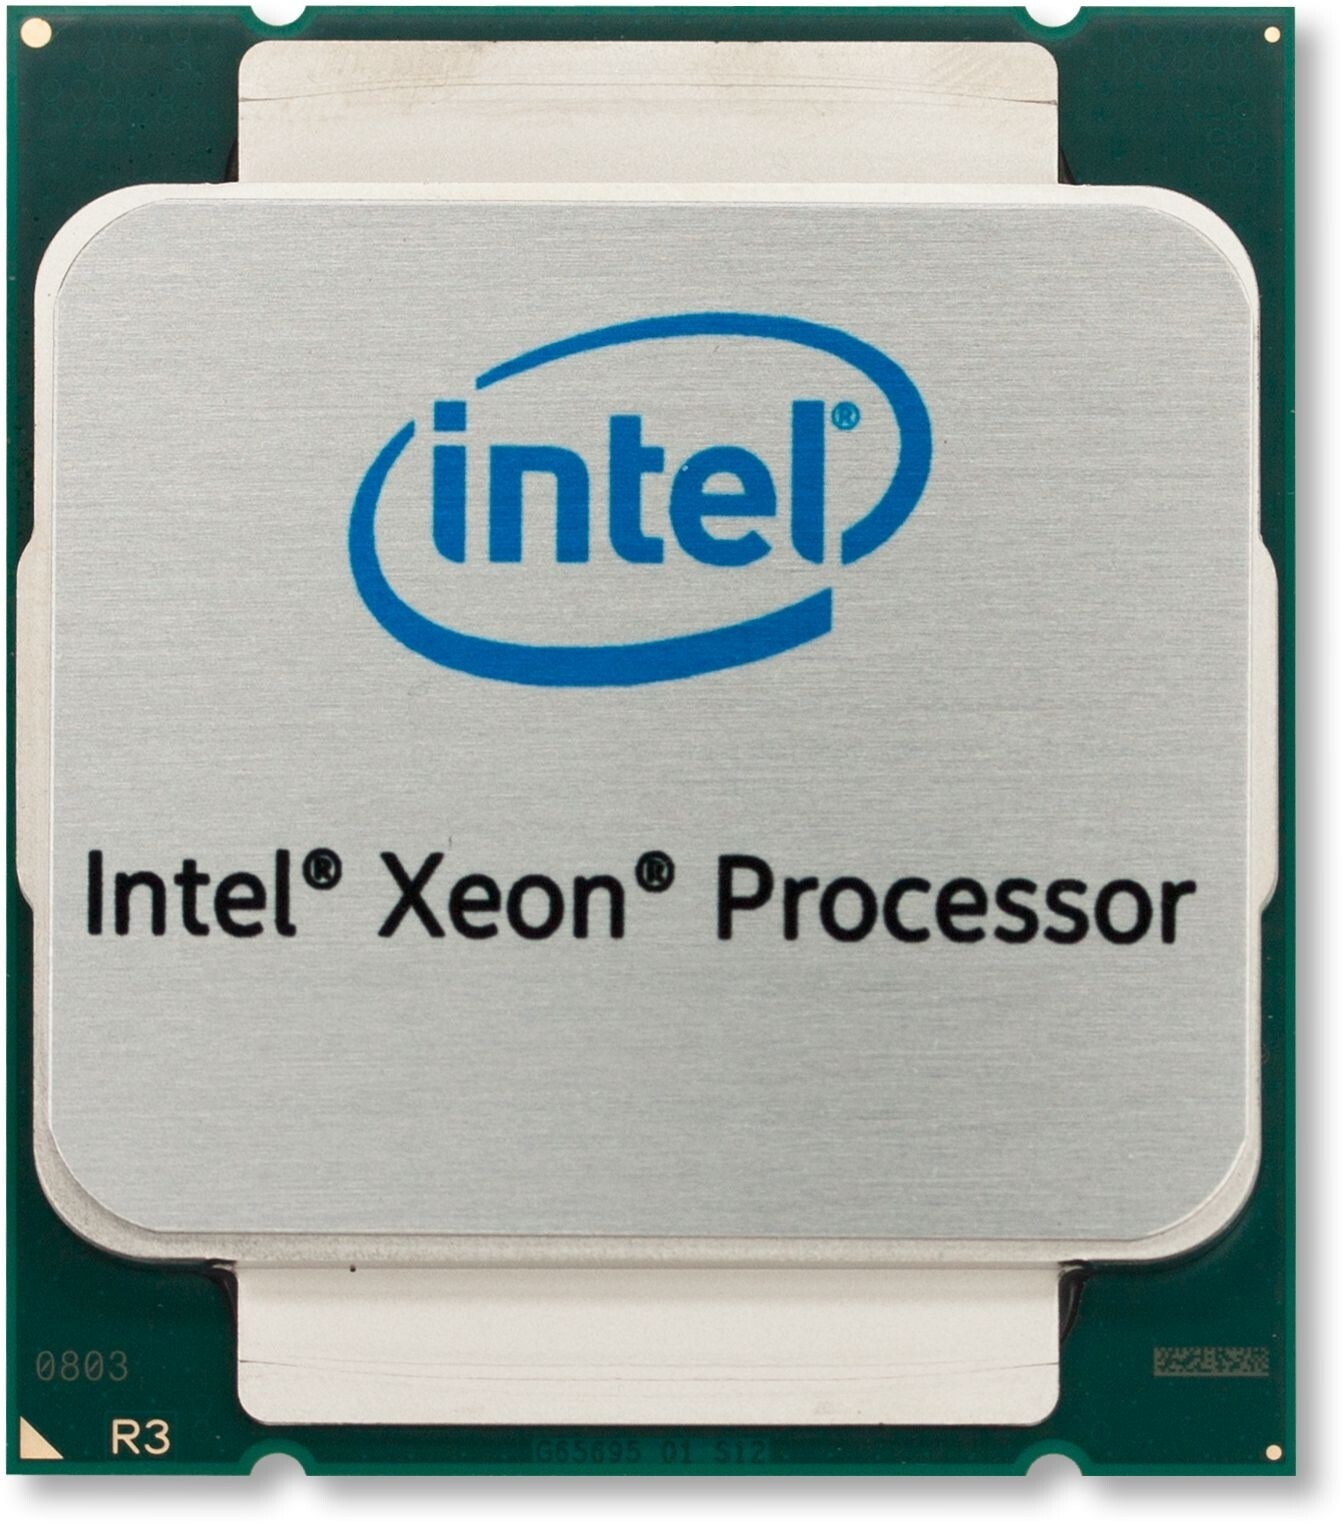 Intel Xeon E5-1620V2 3.70GHz CPU Processor Full Size Image